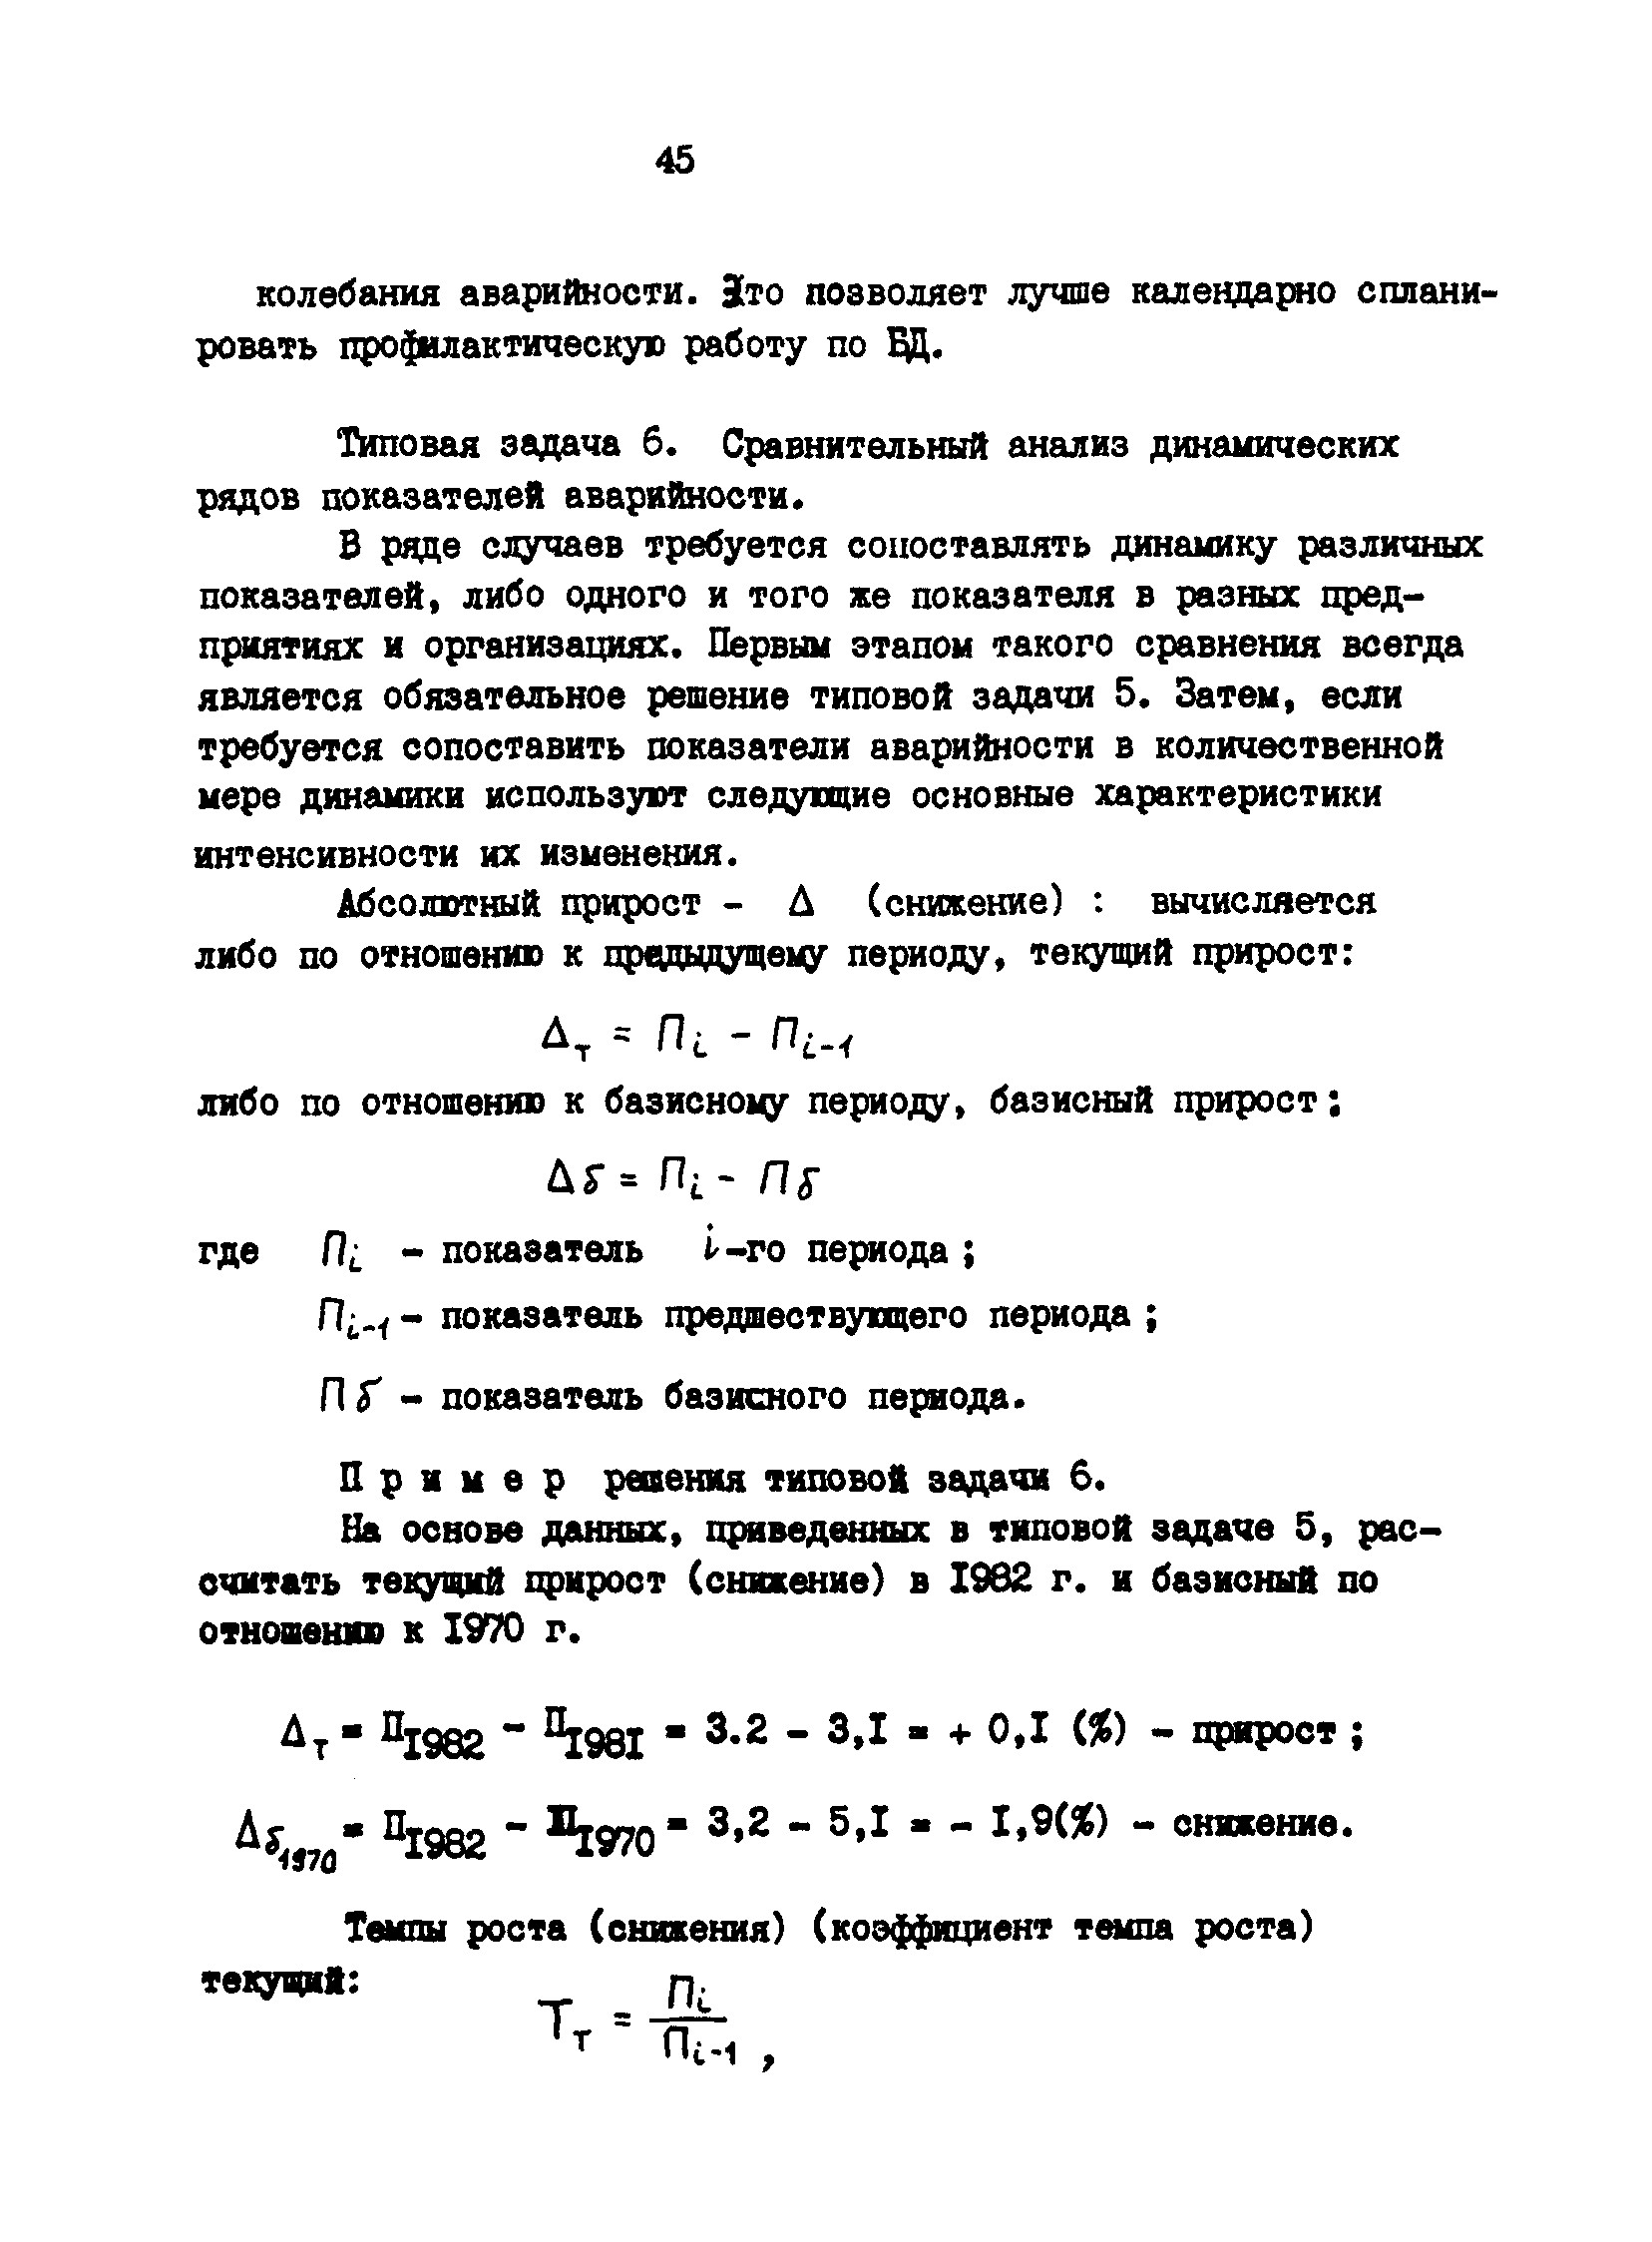 РД 200-РСФСР-12-0071-86-13